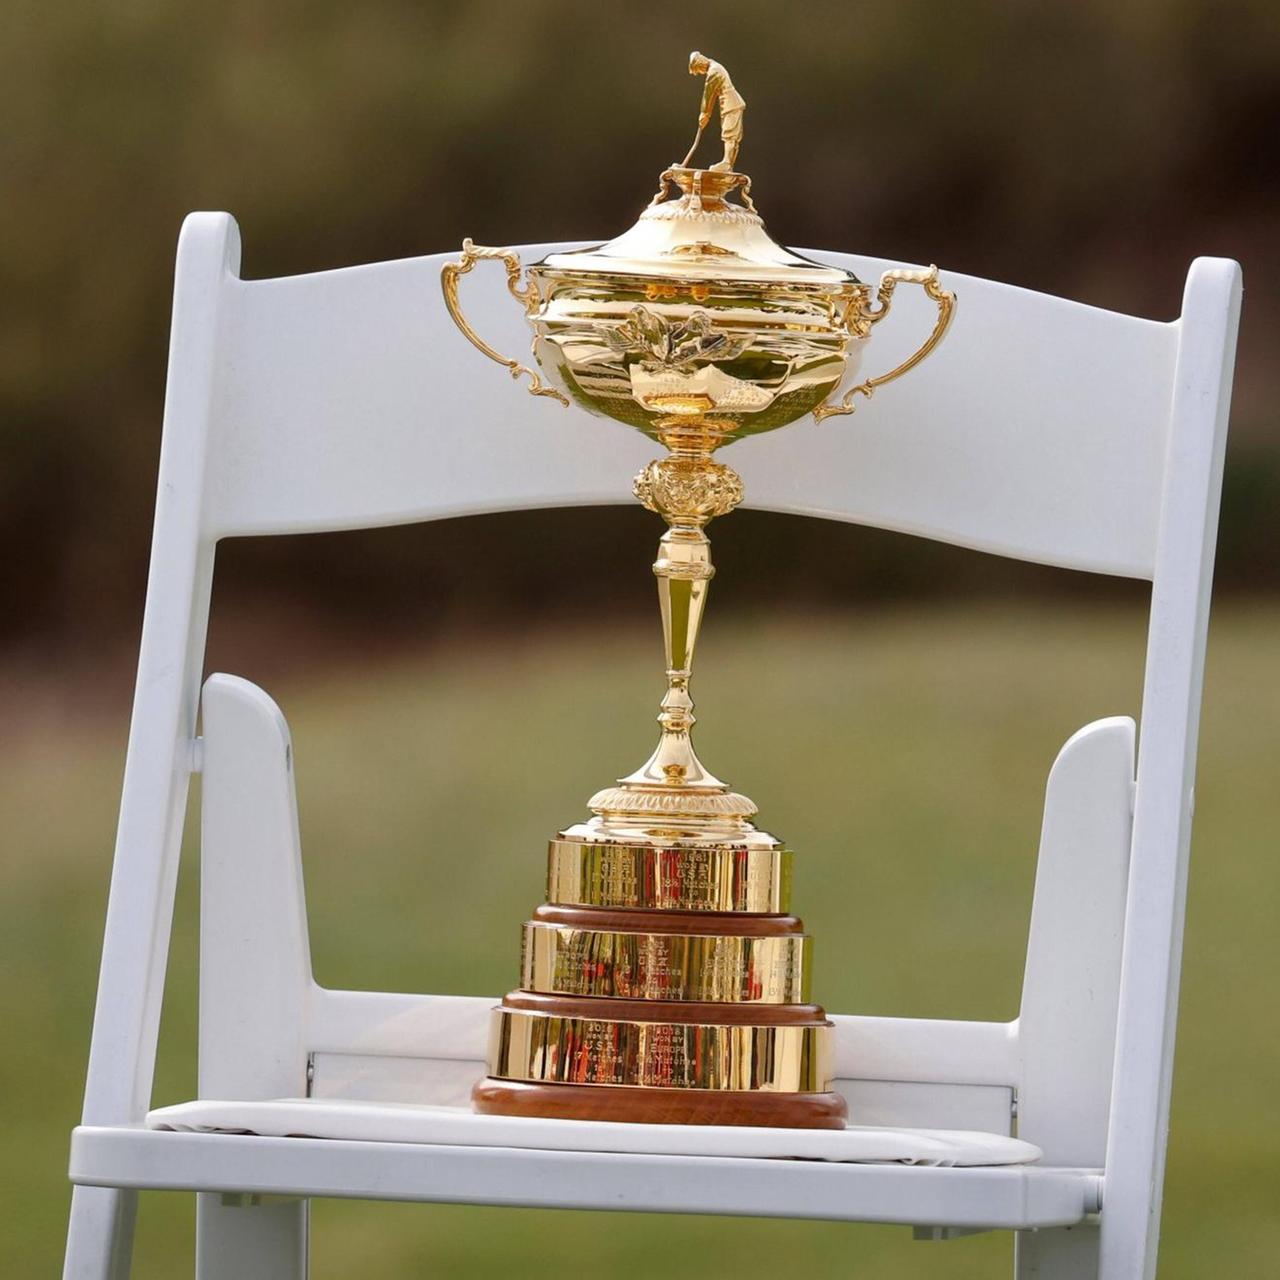 Die Ryder-Cup-Trophäe steht auf einem weißen Stuhl